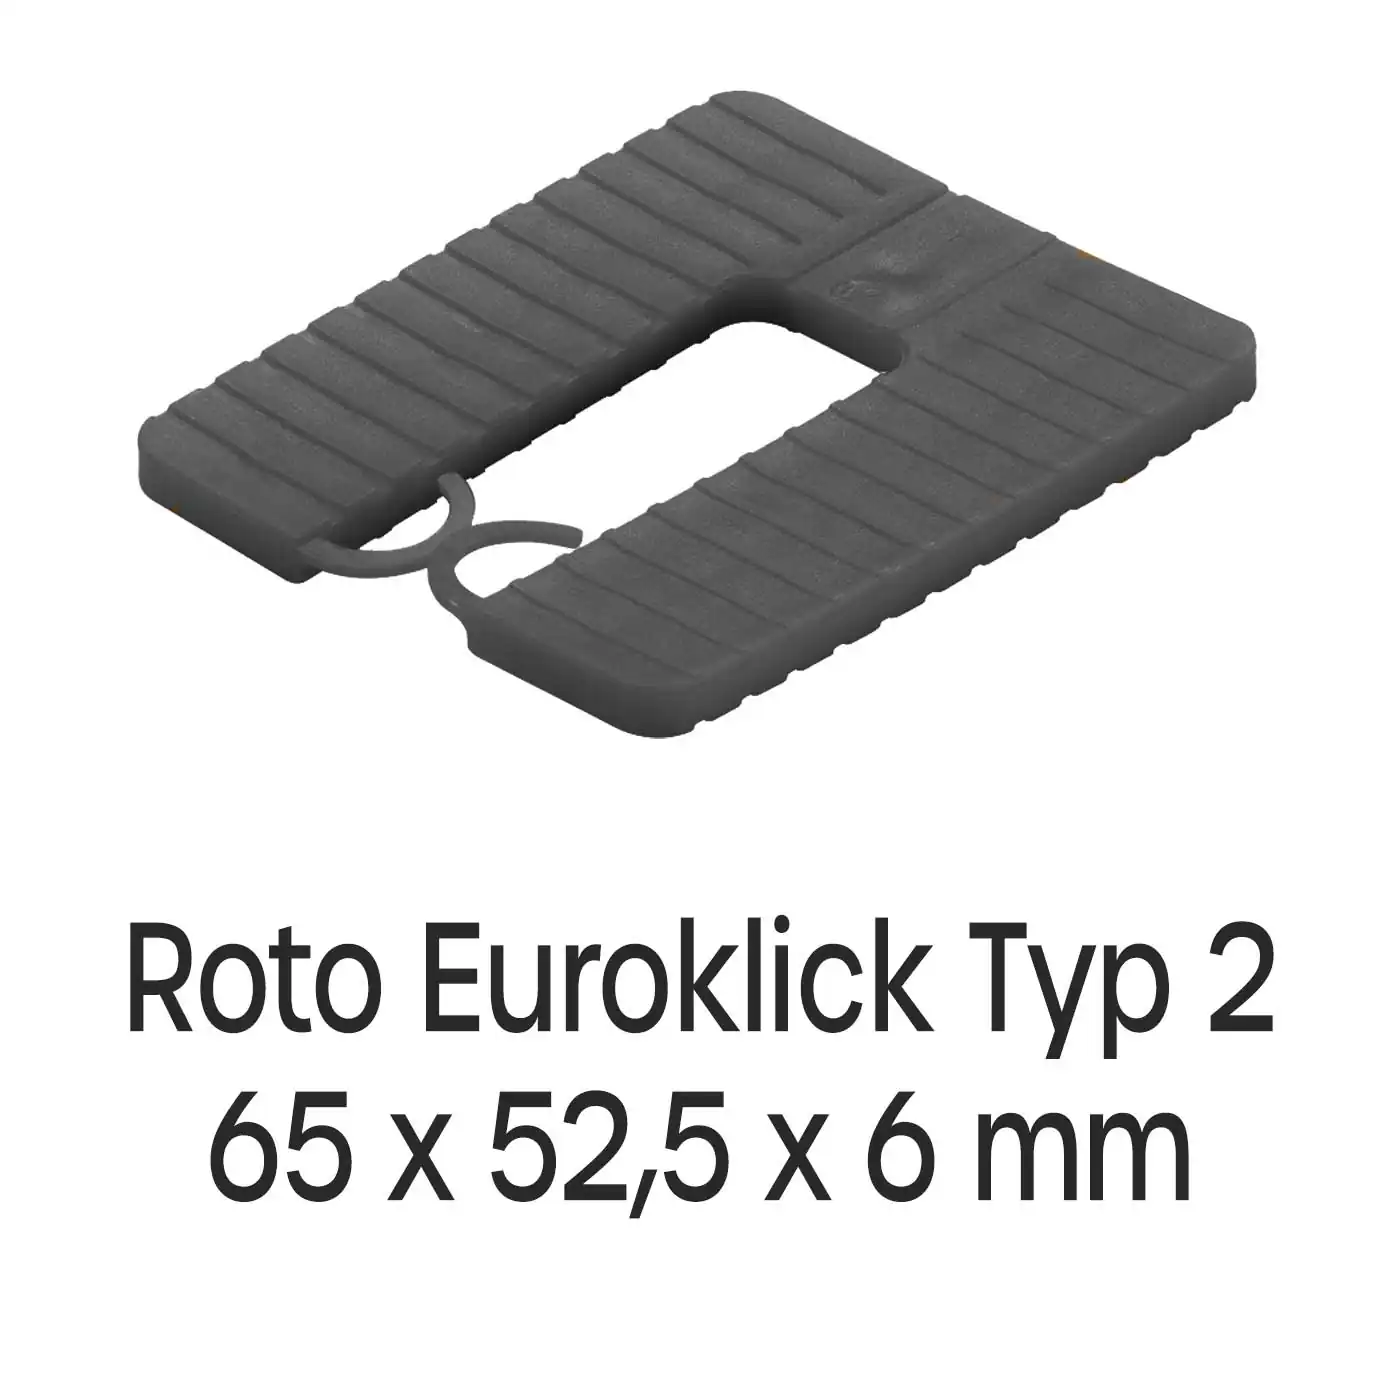 Distanzplatten Roto Euroklick Typ 2 65 x 52,5 x 6 mm 500 Stück